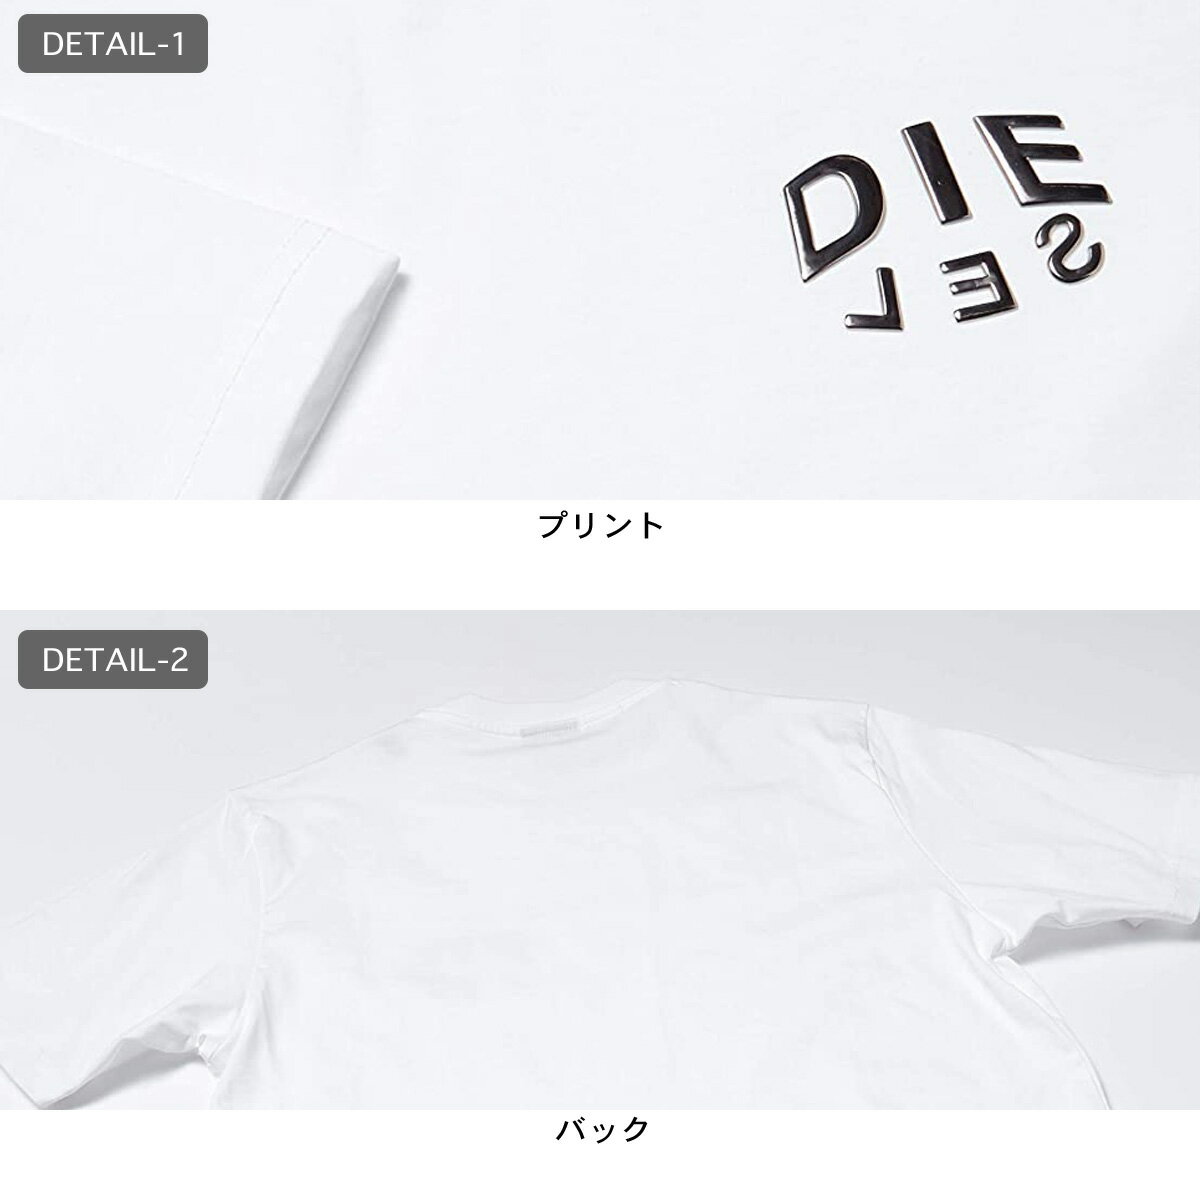 DIESEL ディーゼル レディース メンズ T-JUST-SLITS-A30 Tシャツ 半袖 ロゴ メタリック A016840PATI ホワイト